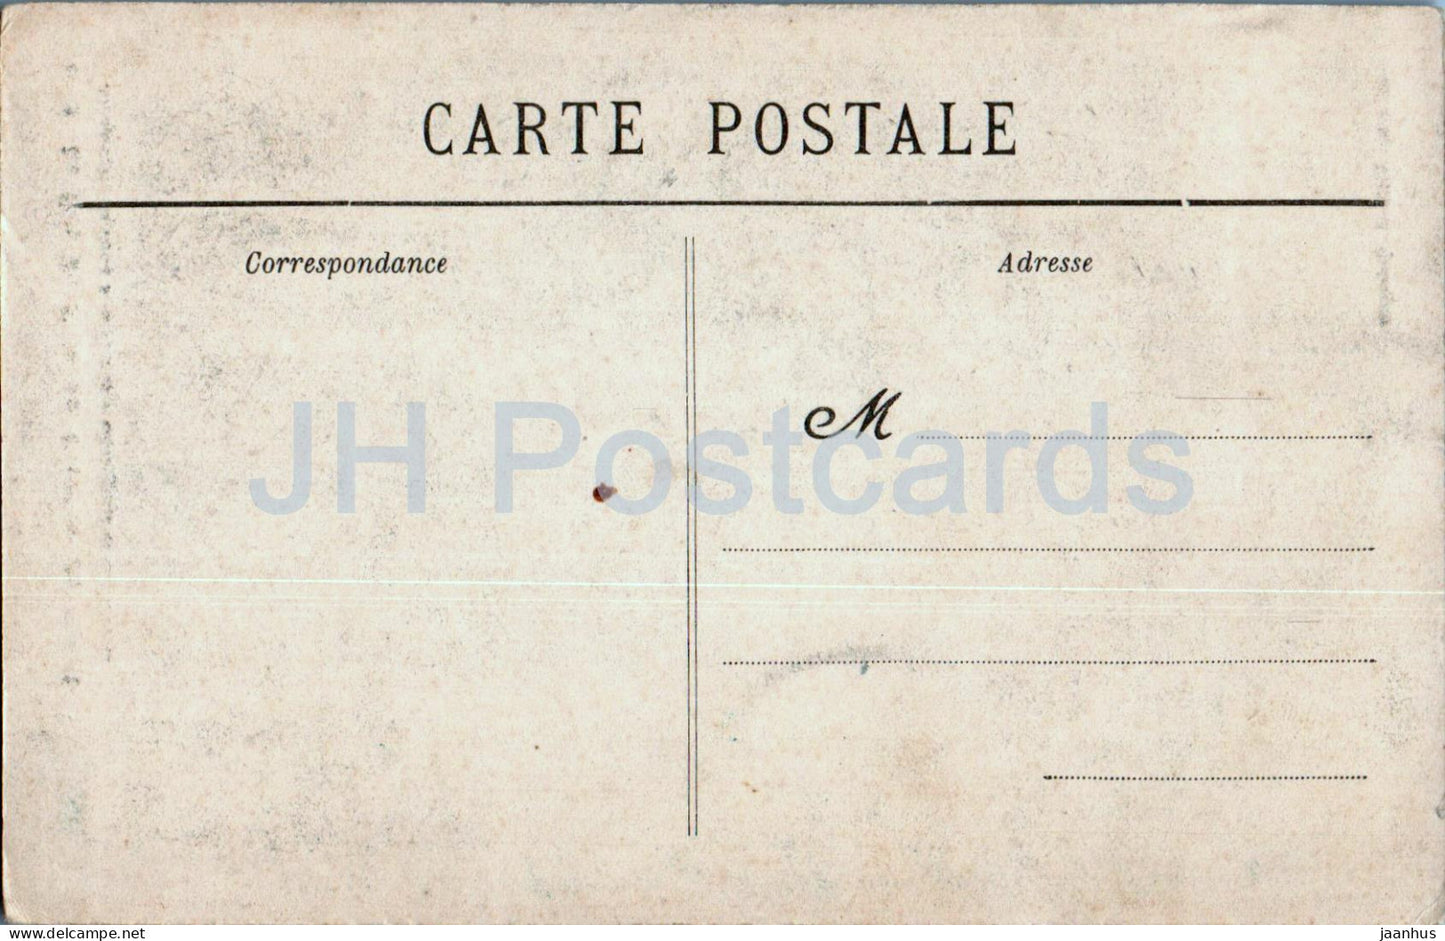 Le Raz de Sein au Coucher du Soleil - Allumage des Feux à la Vieille - phare 6582 - carte postale ancienne - France - inutilisée 